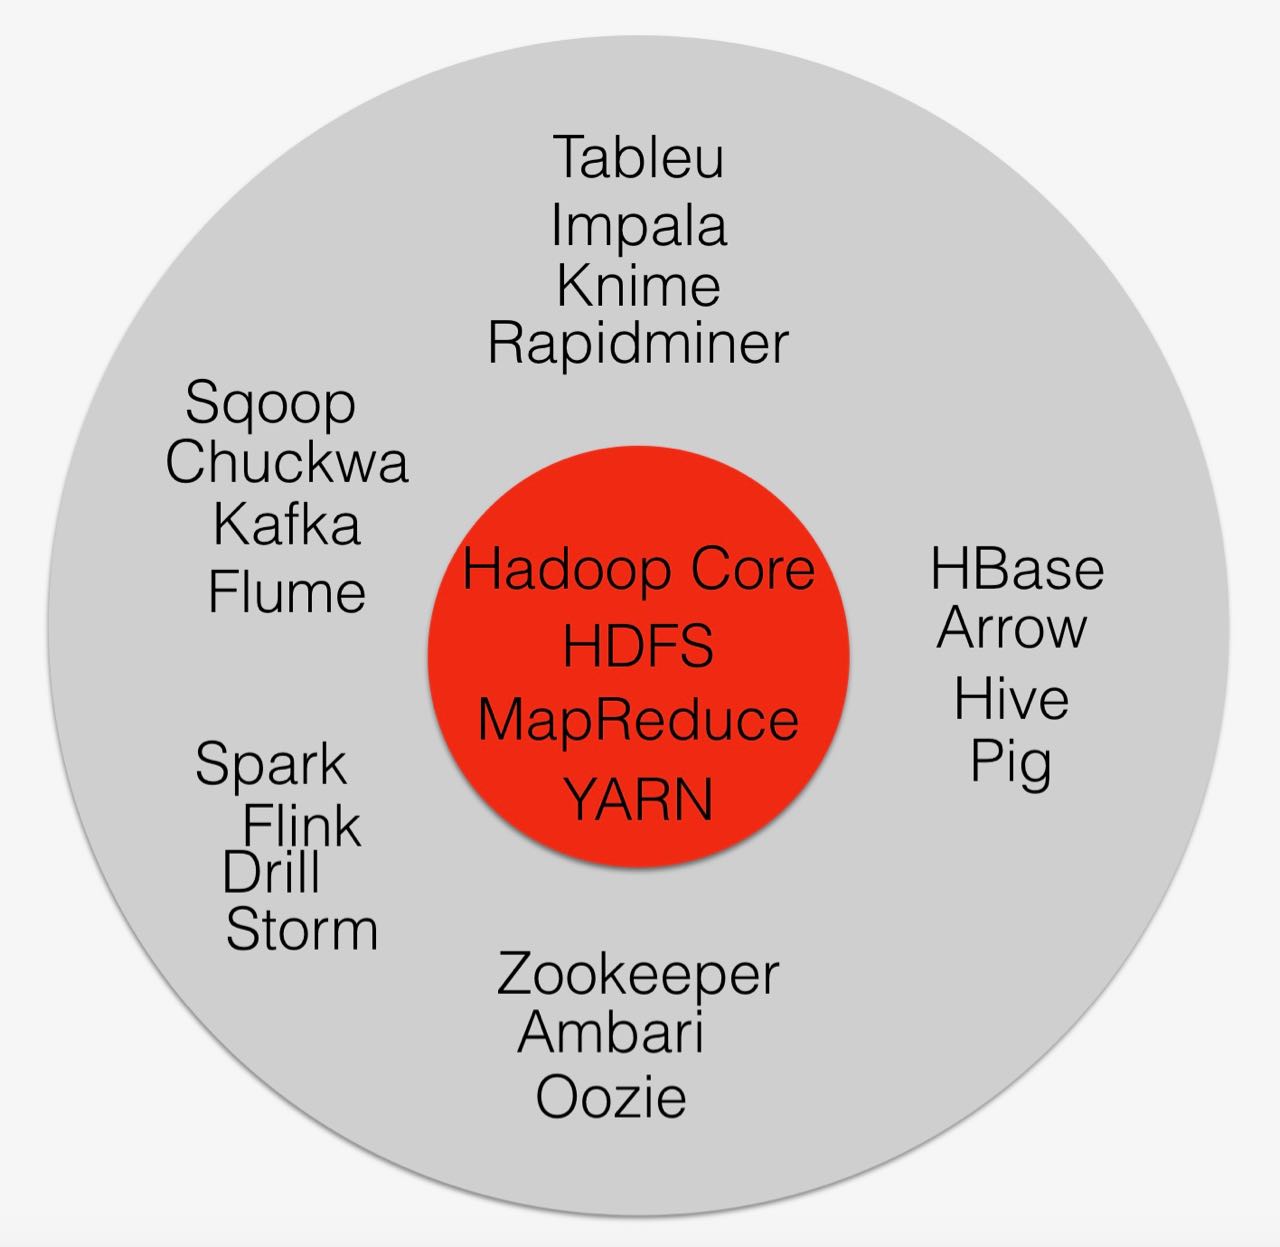 Hadoop Ecosystem Components